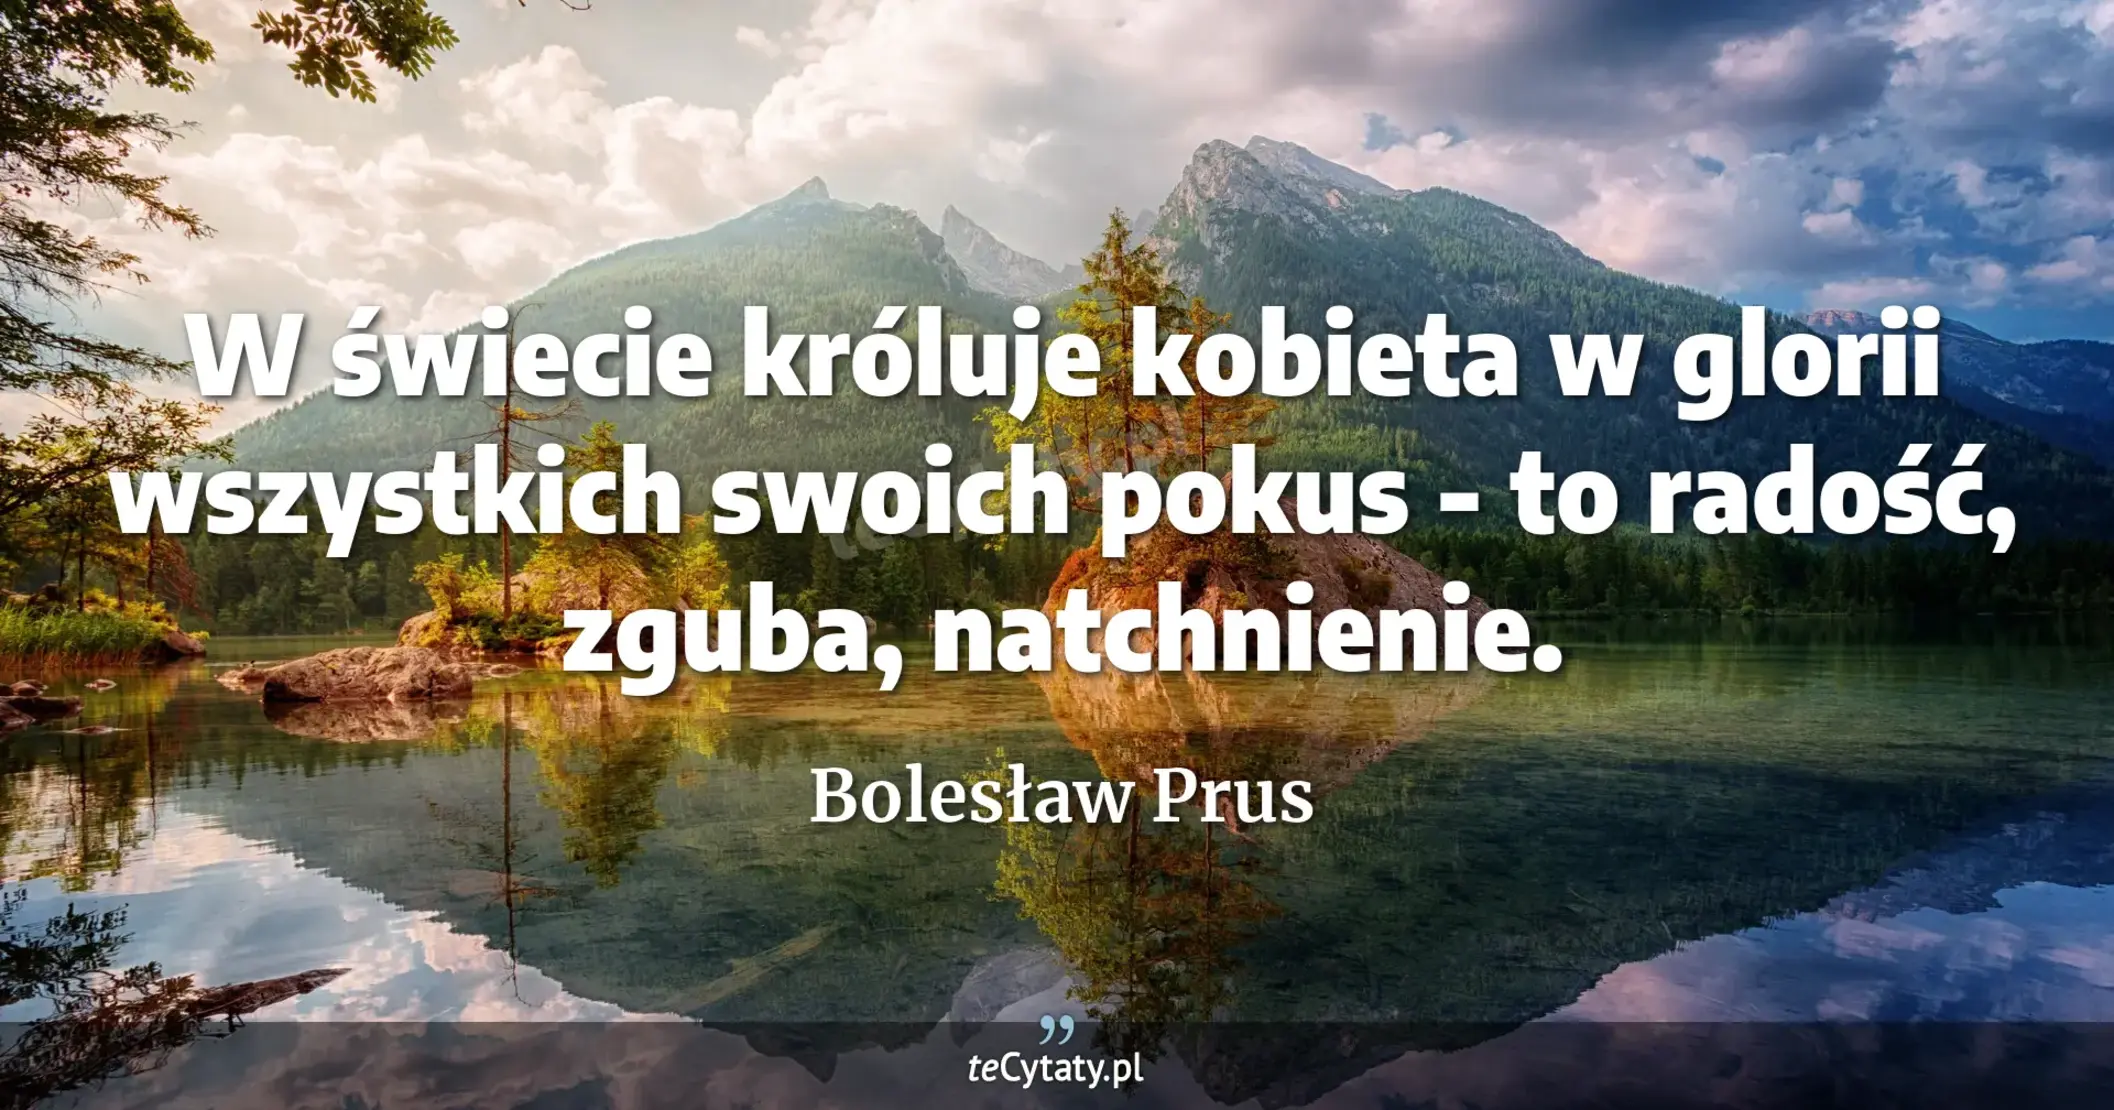 W świecie króluje kobieta w glorii wszystkich swoich pokus - to radość, zguba, natchnienie. - Bolesław Prus